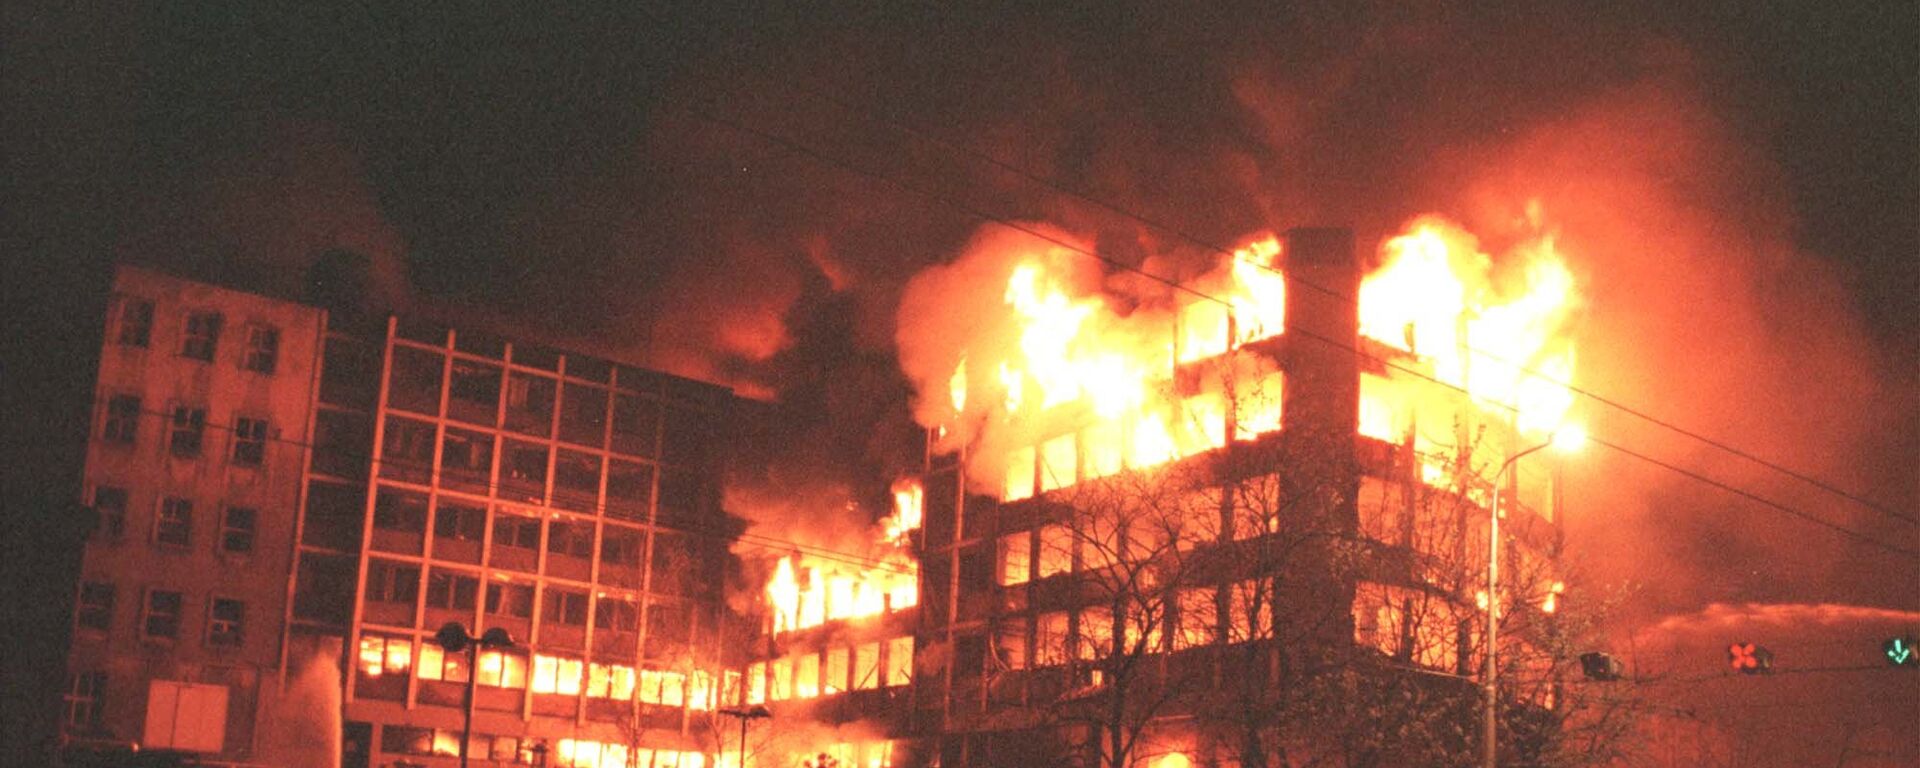 Bombardovanje Beograda 1999. - Sputnik Srbija, 1920, 28.03.2021